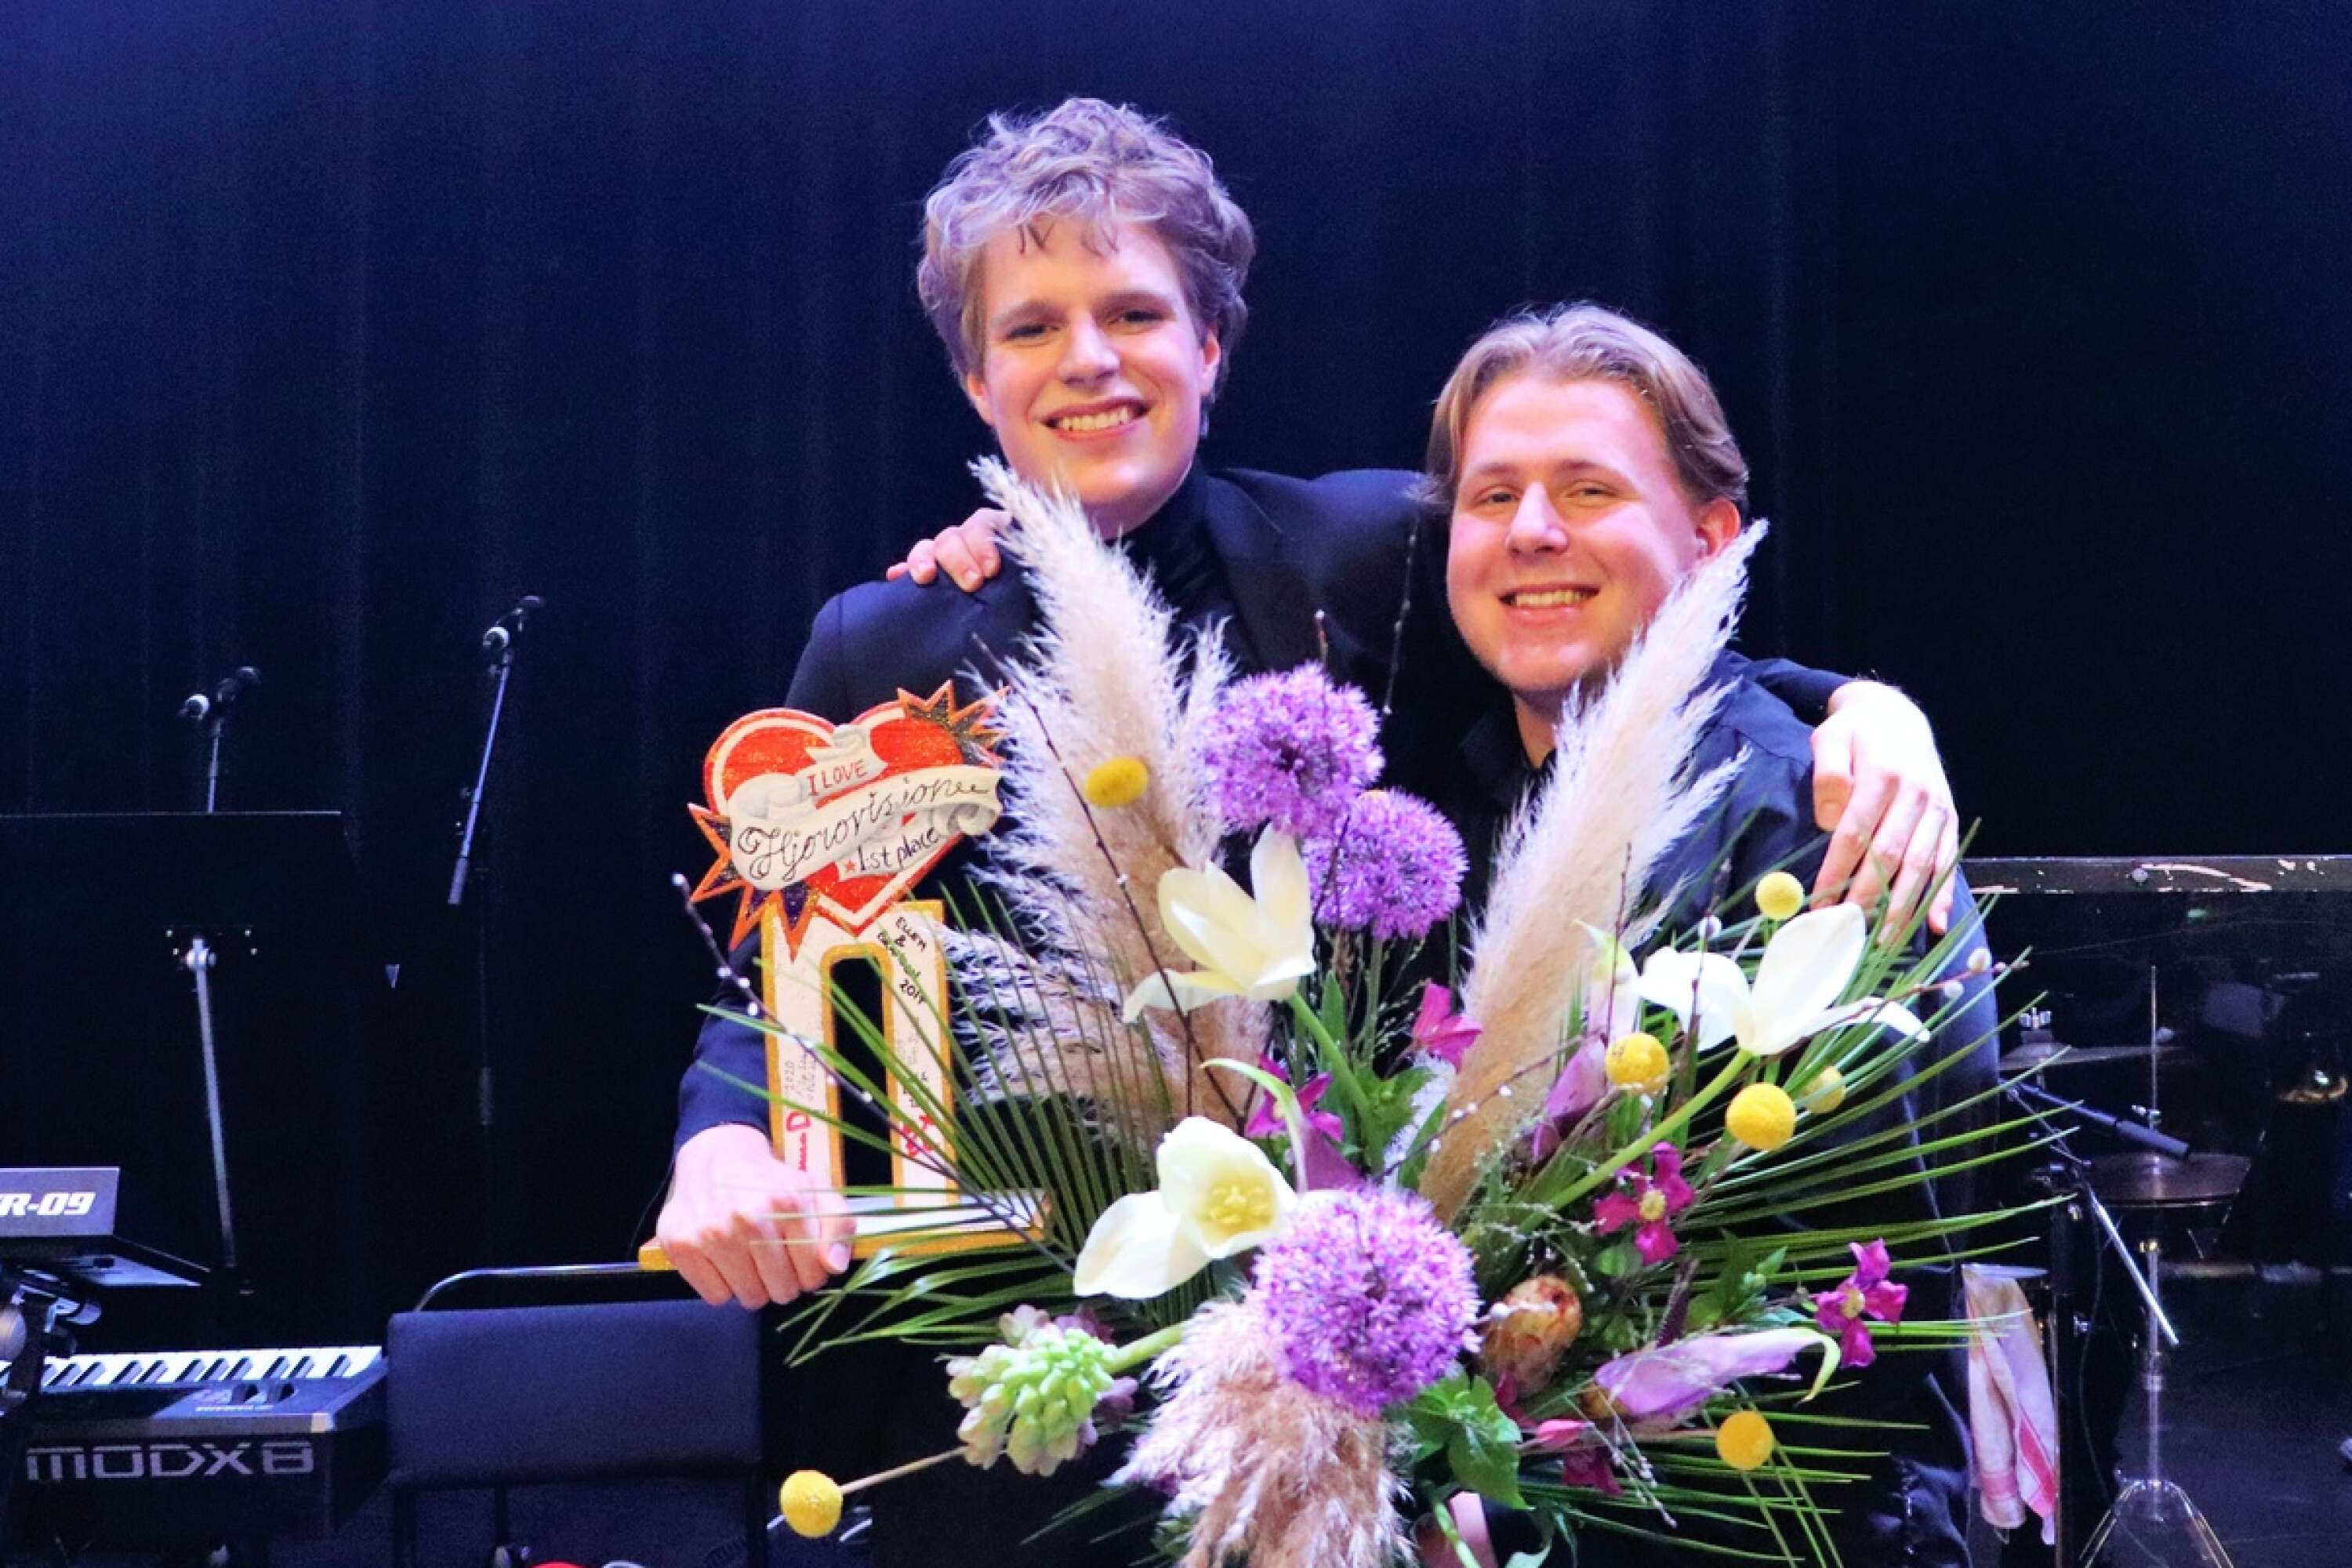 Vinnarna Åke Wieland och Olliwer Jonsson Bixo fick ta emot vandringspokalen och blommor efter att deras bidrag “Den svarta sjukan” kammat hem segern.